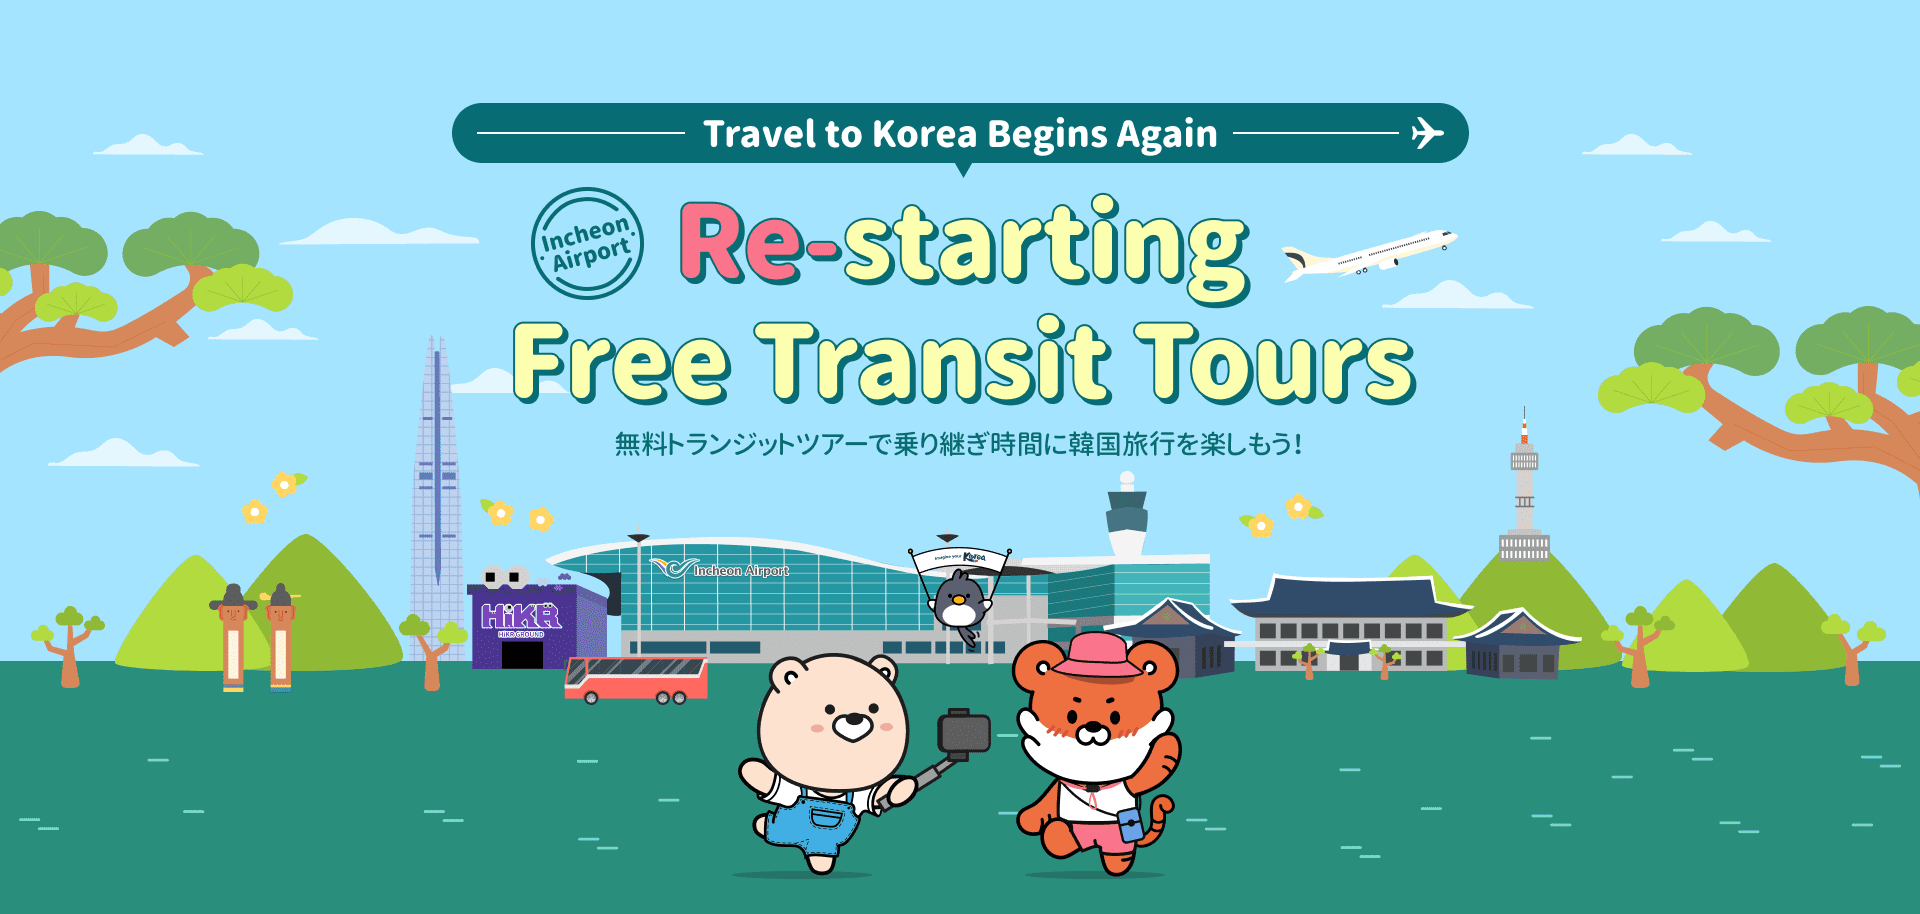 Travel to Korea Begins Again, Restarting Free Transit Tours